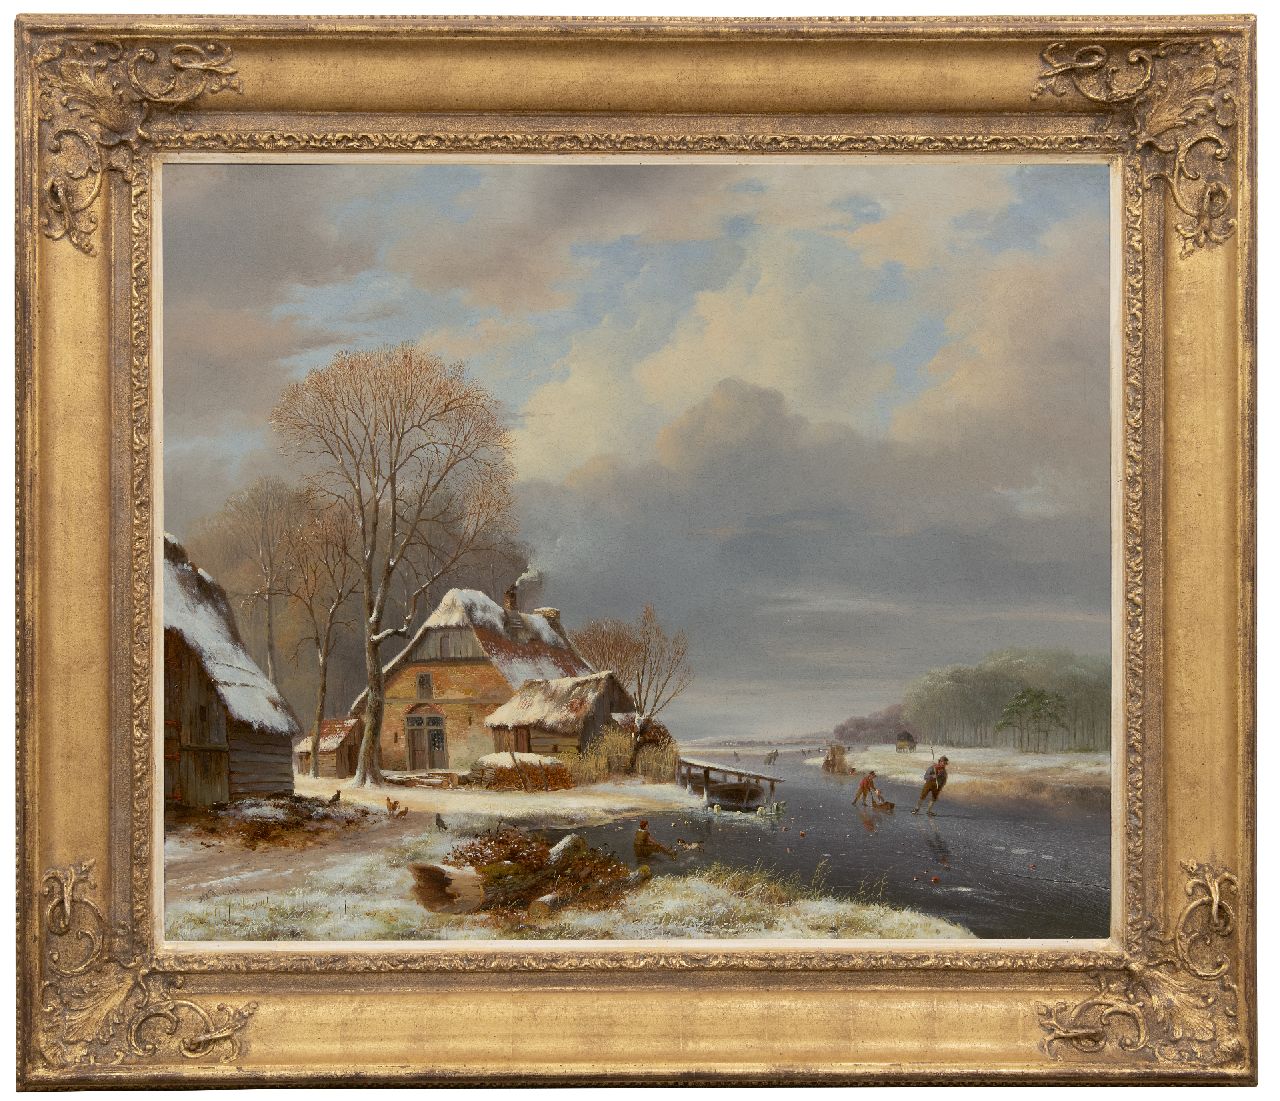 Roosenboom N.J.  | Nicolaas Johannes Roosenboom | Schilderijen te koop aangeboden | Winters riviergezicht met schaatsers bij een boerderij, olieverf op doek 71,2 x 87,7 cm, gesigneerd linksonder